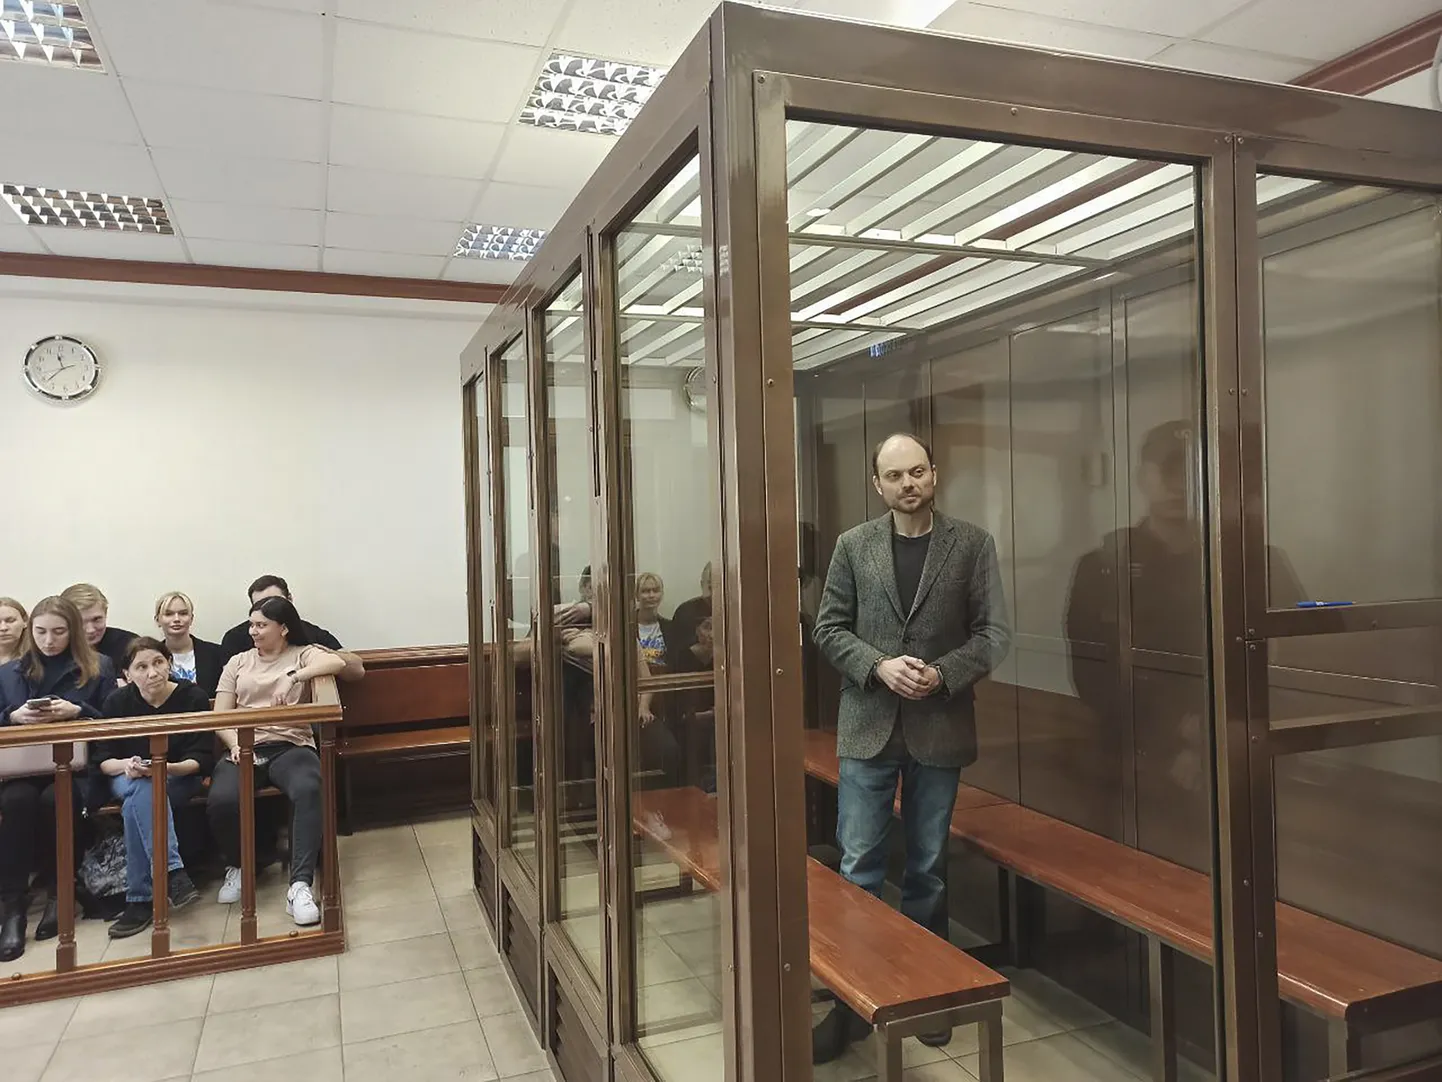 Erinevalt Jevgeni Prigožinist tuli opositsioonipoliitik Vladimir Kara-Murzal kohtu ette astuda ja talle mõisteti 25-aastane vanglakaristus